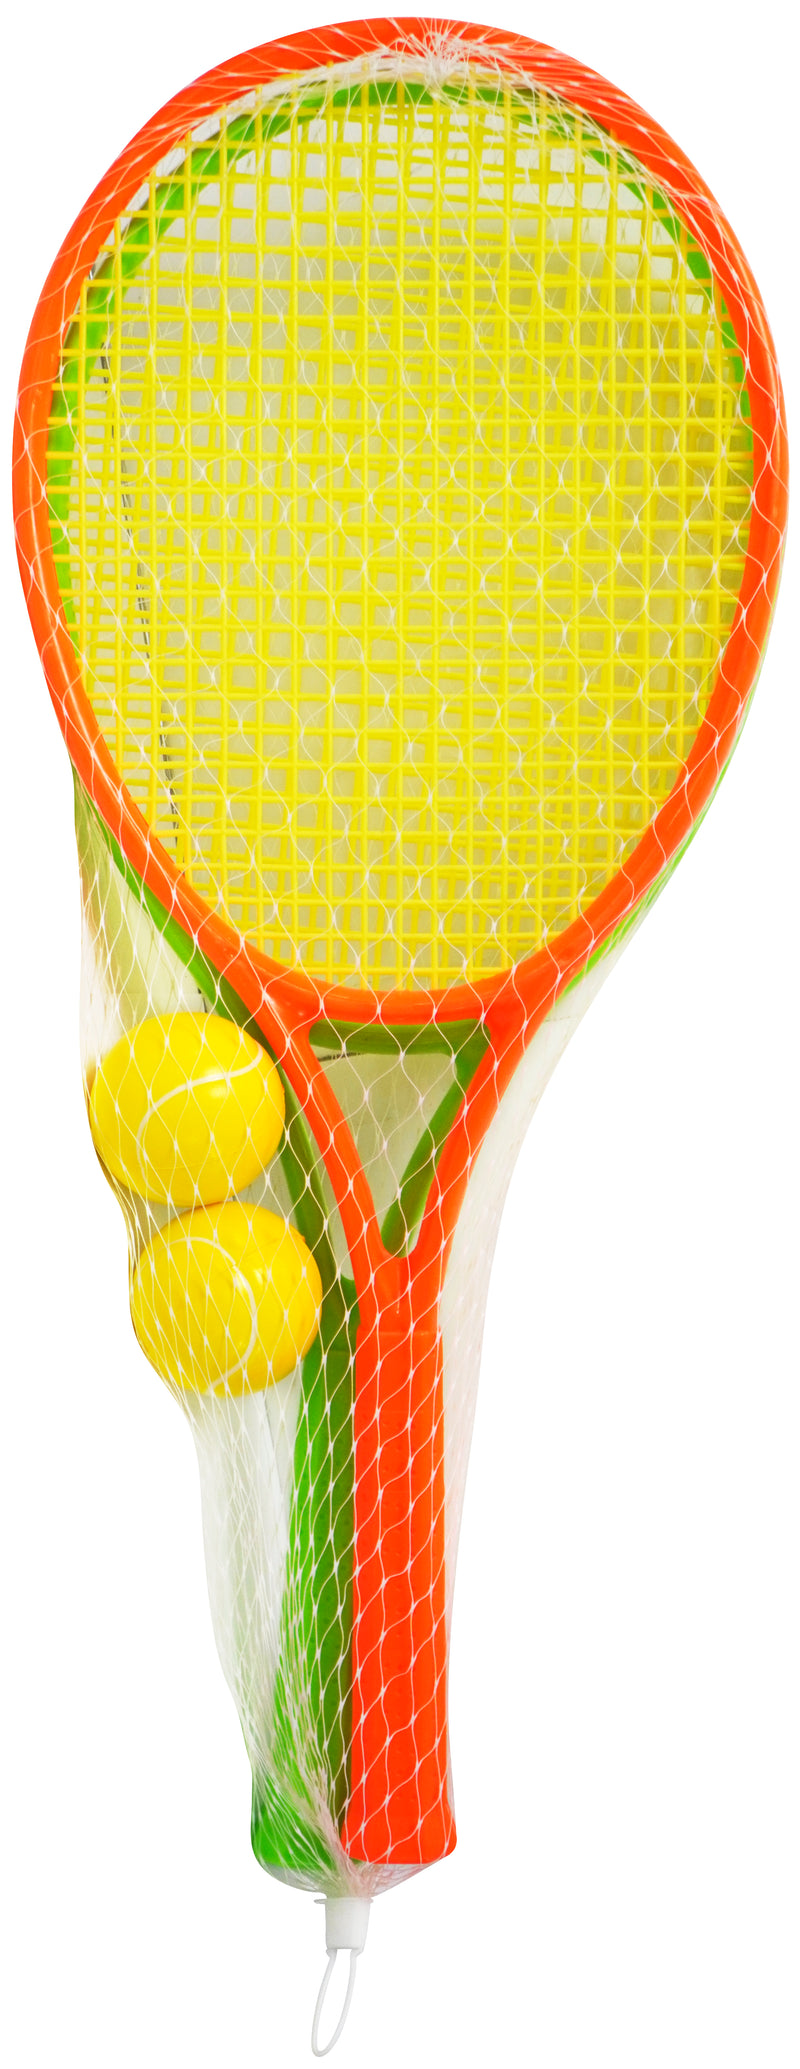 Tennissæt i plastik til to personer fra Play>it i en pose